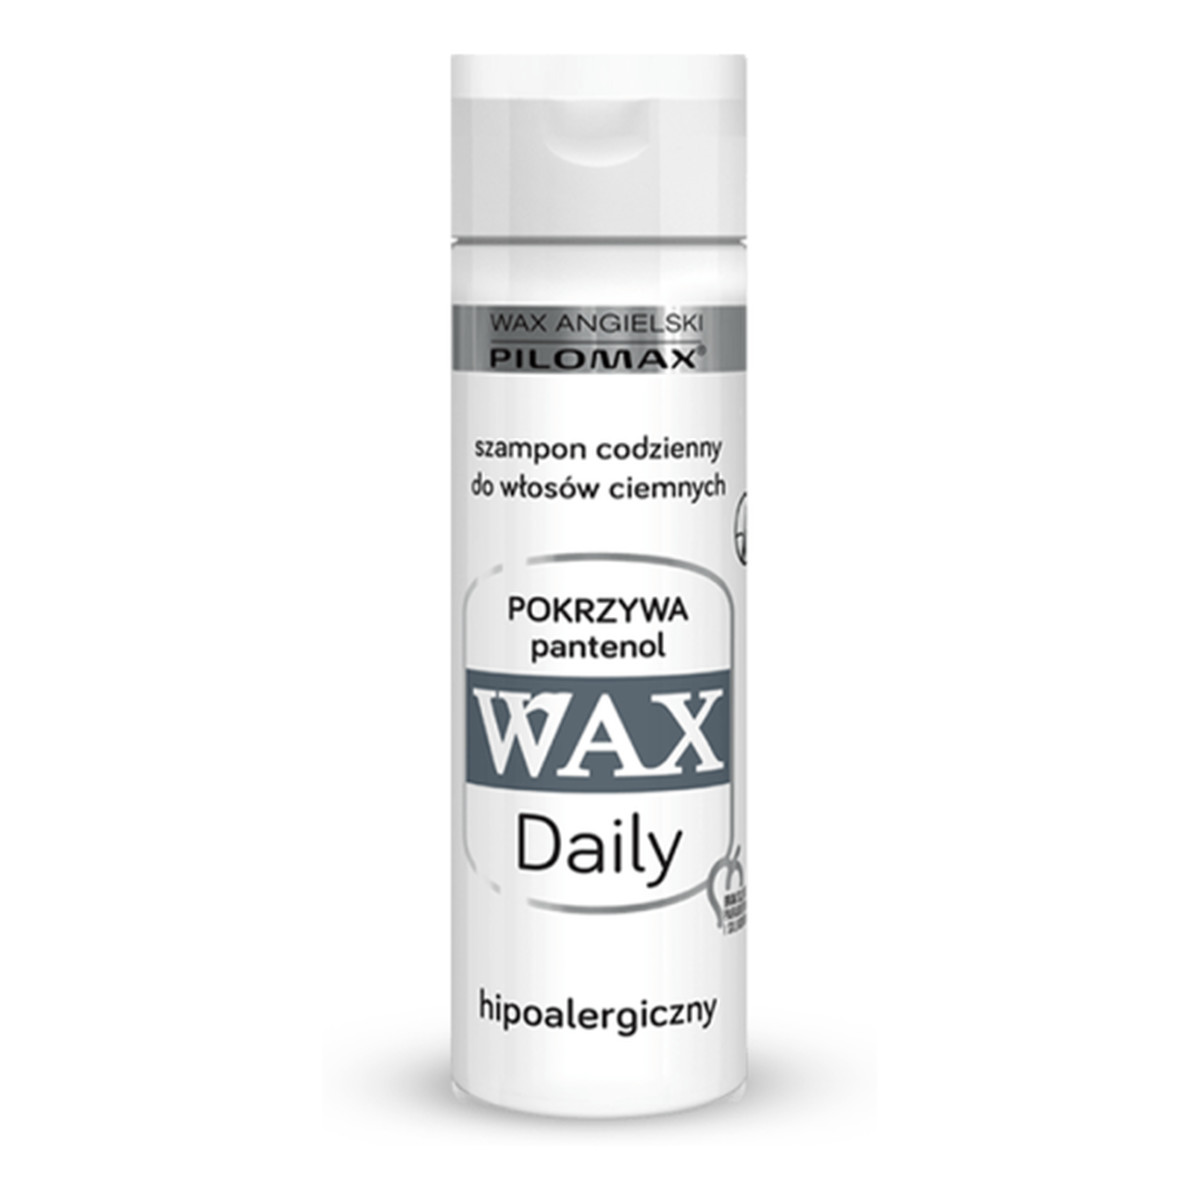 Pilomax Wax Daily Szampon Do Codziennej Pielęgnacji Włosów Ciemnych 200ml